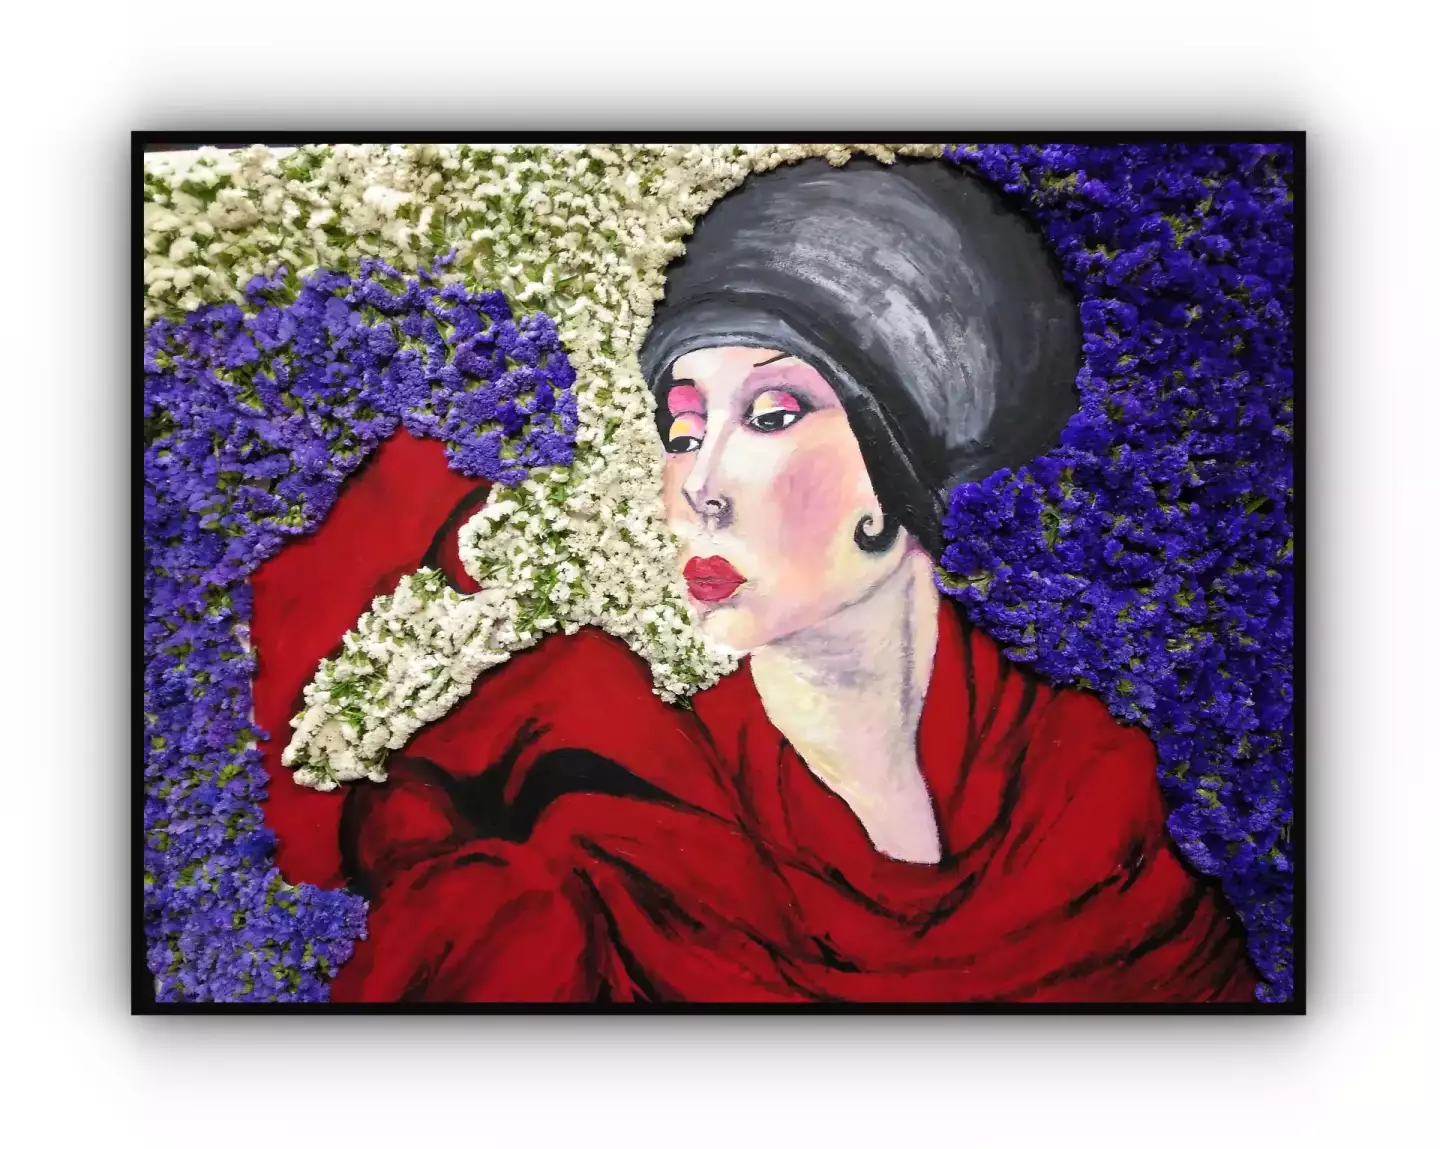 Homenatge a la pintora Tamara de Lempicka, Exposició 